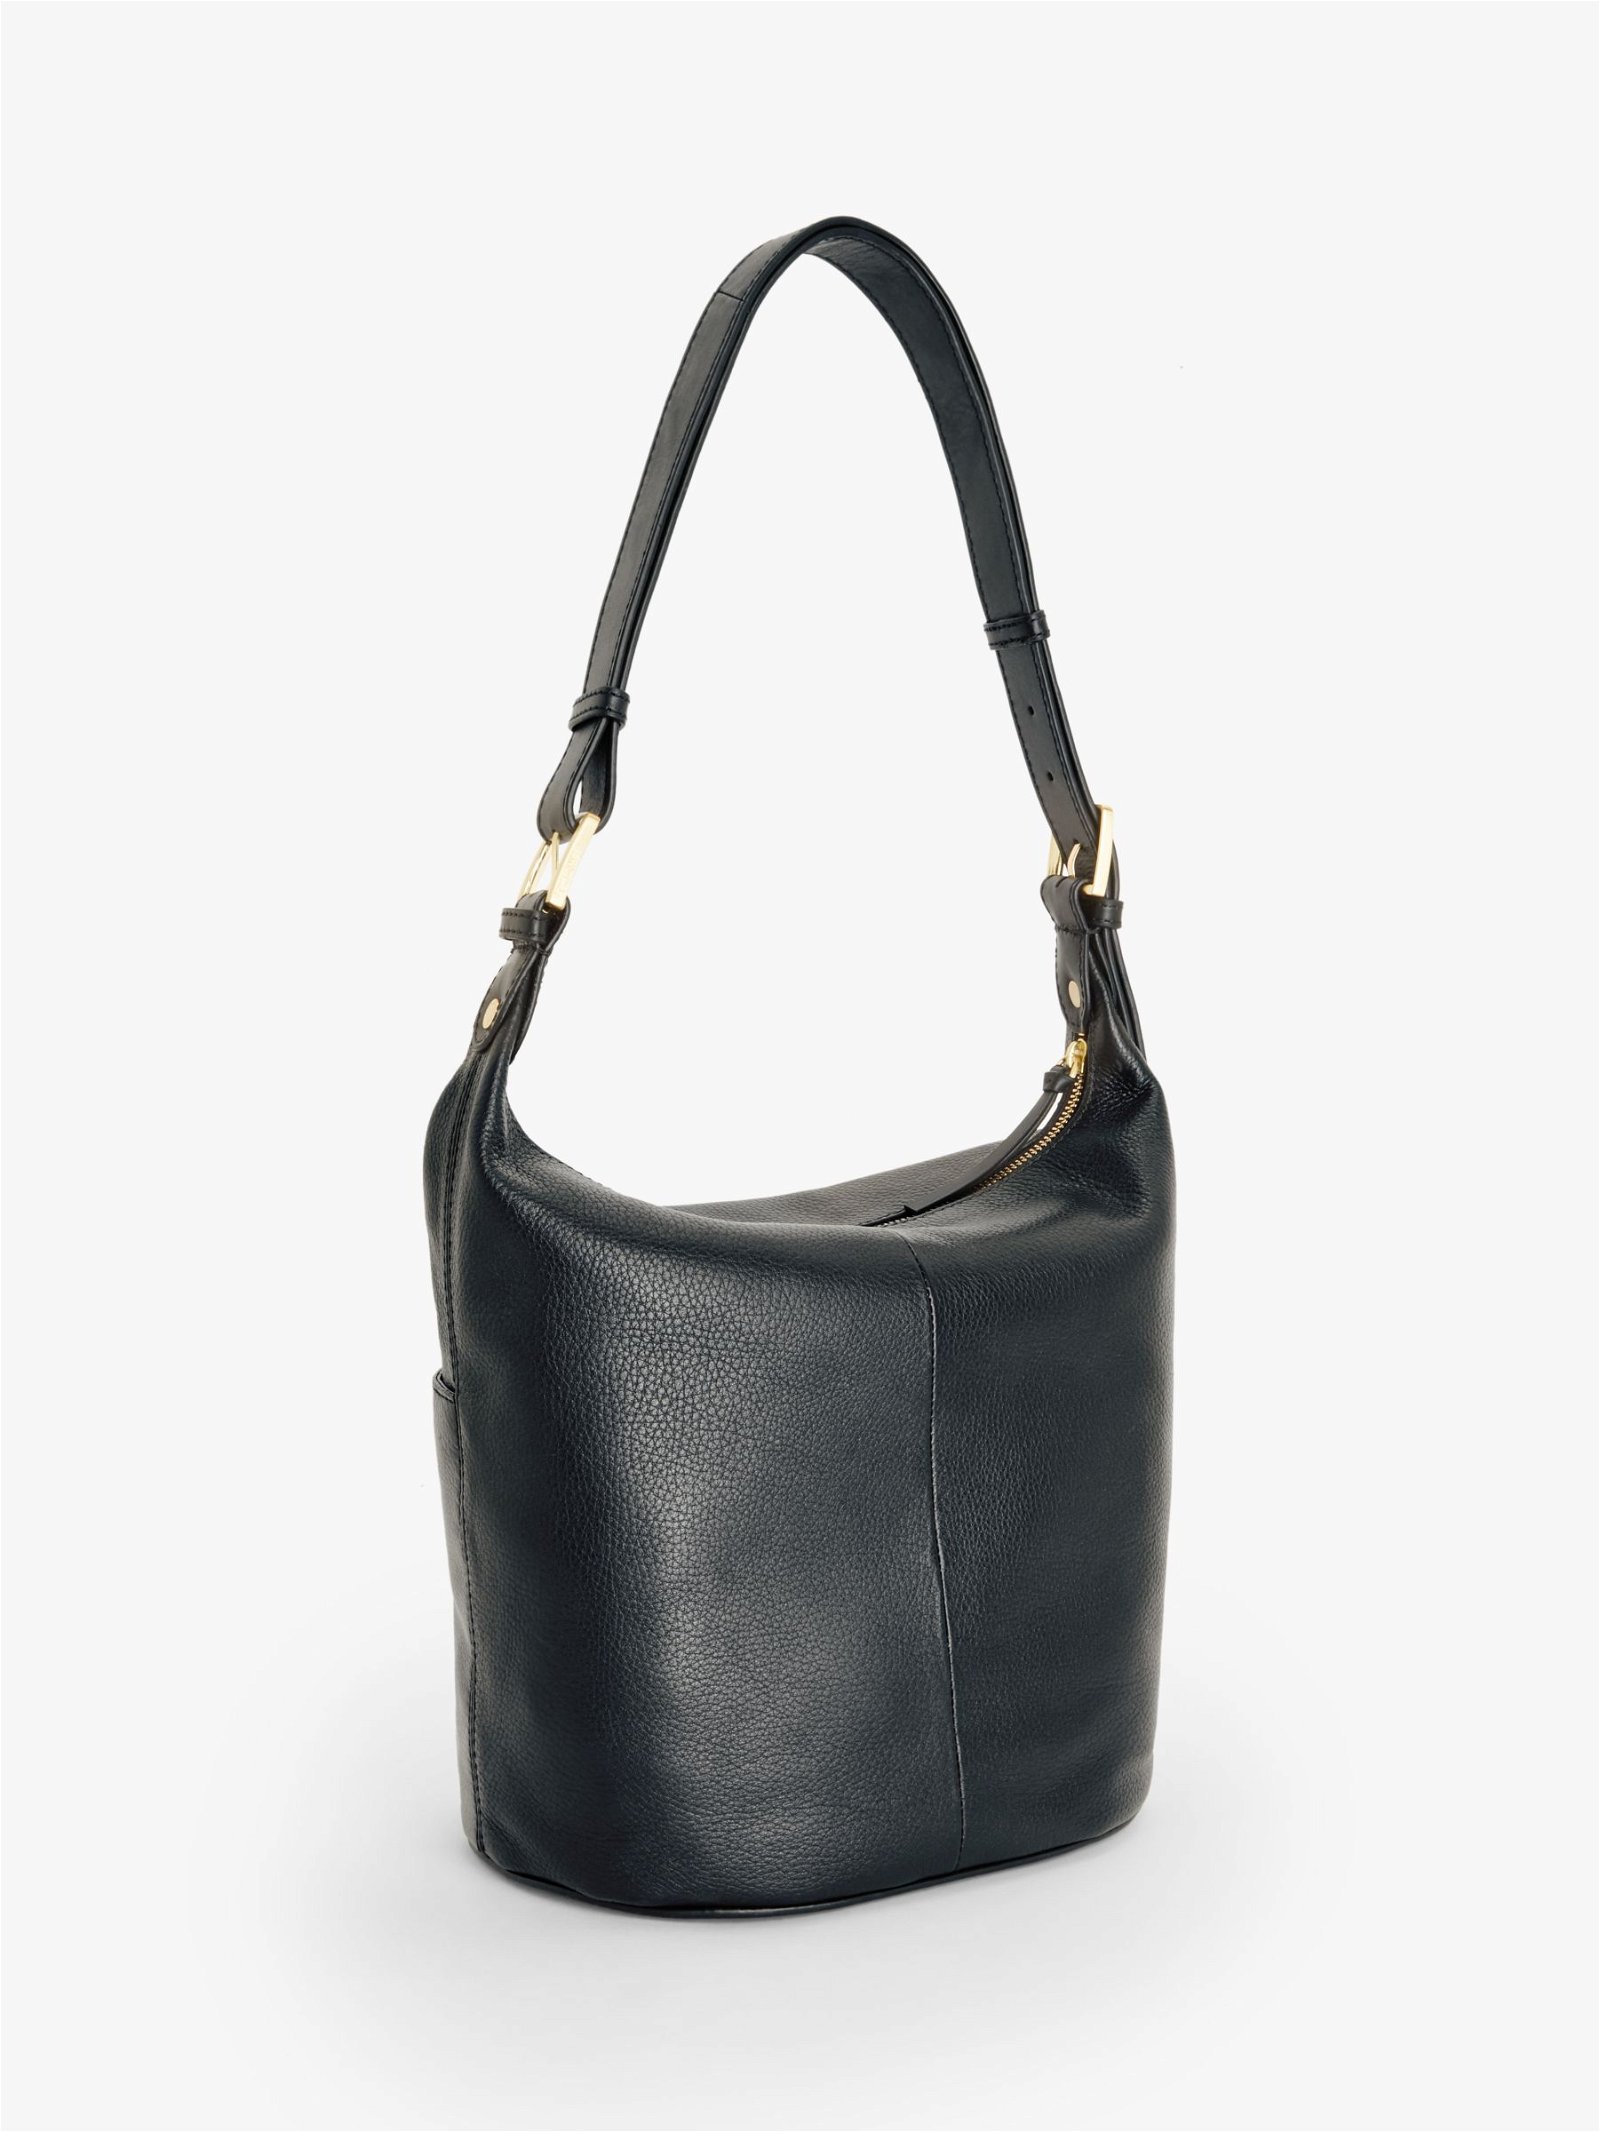 Large Leather Hobo Handbags Purse Shoulder Strap Vintage Bucket